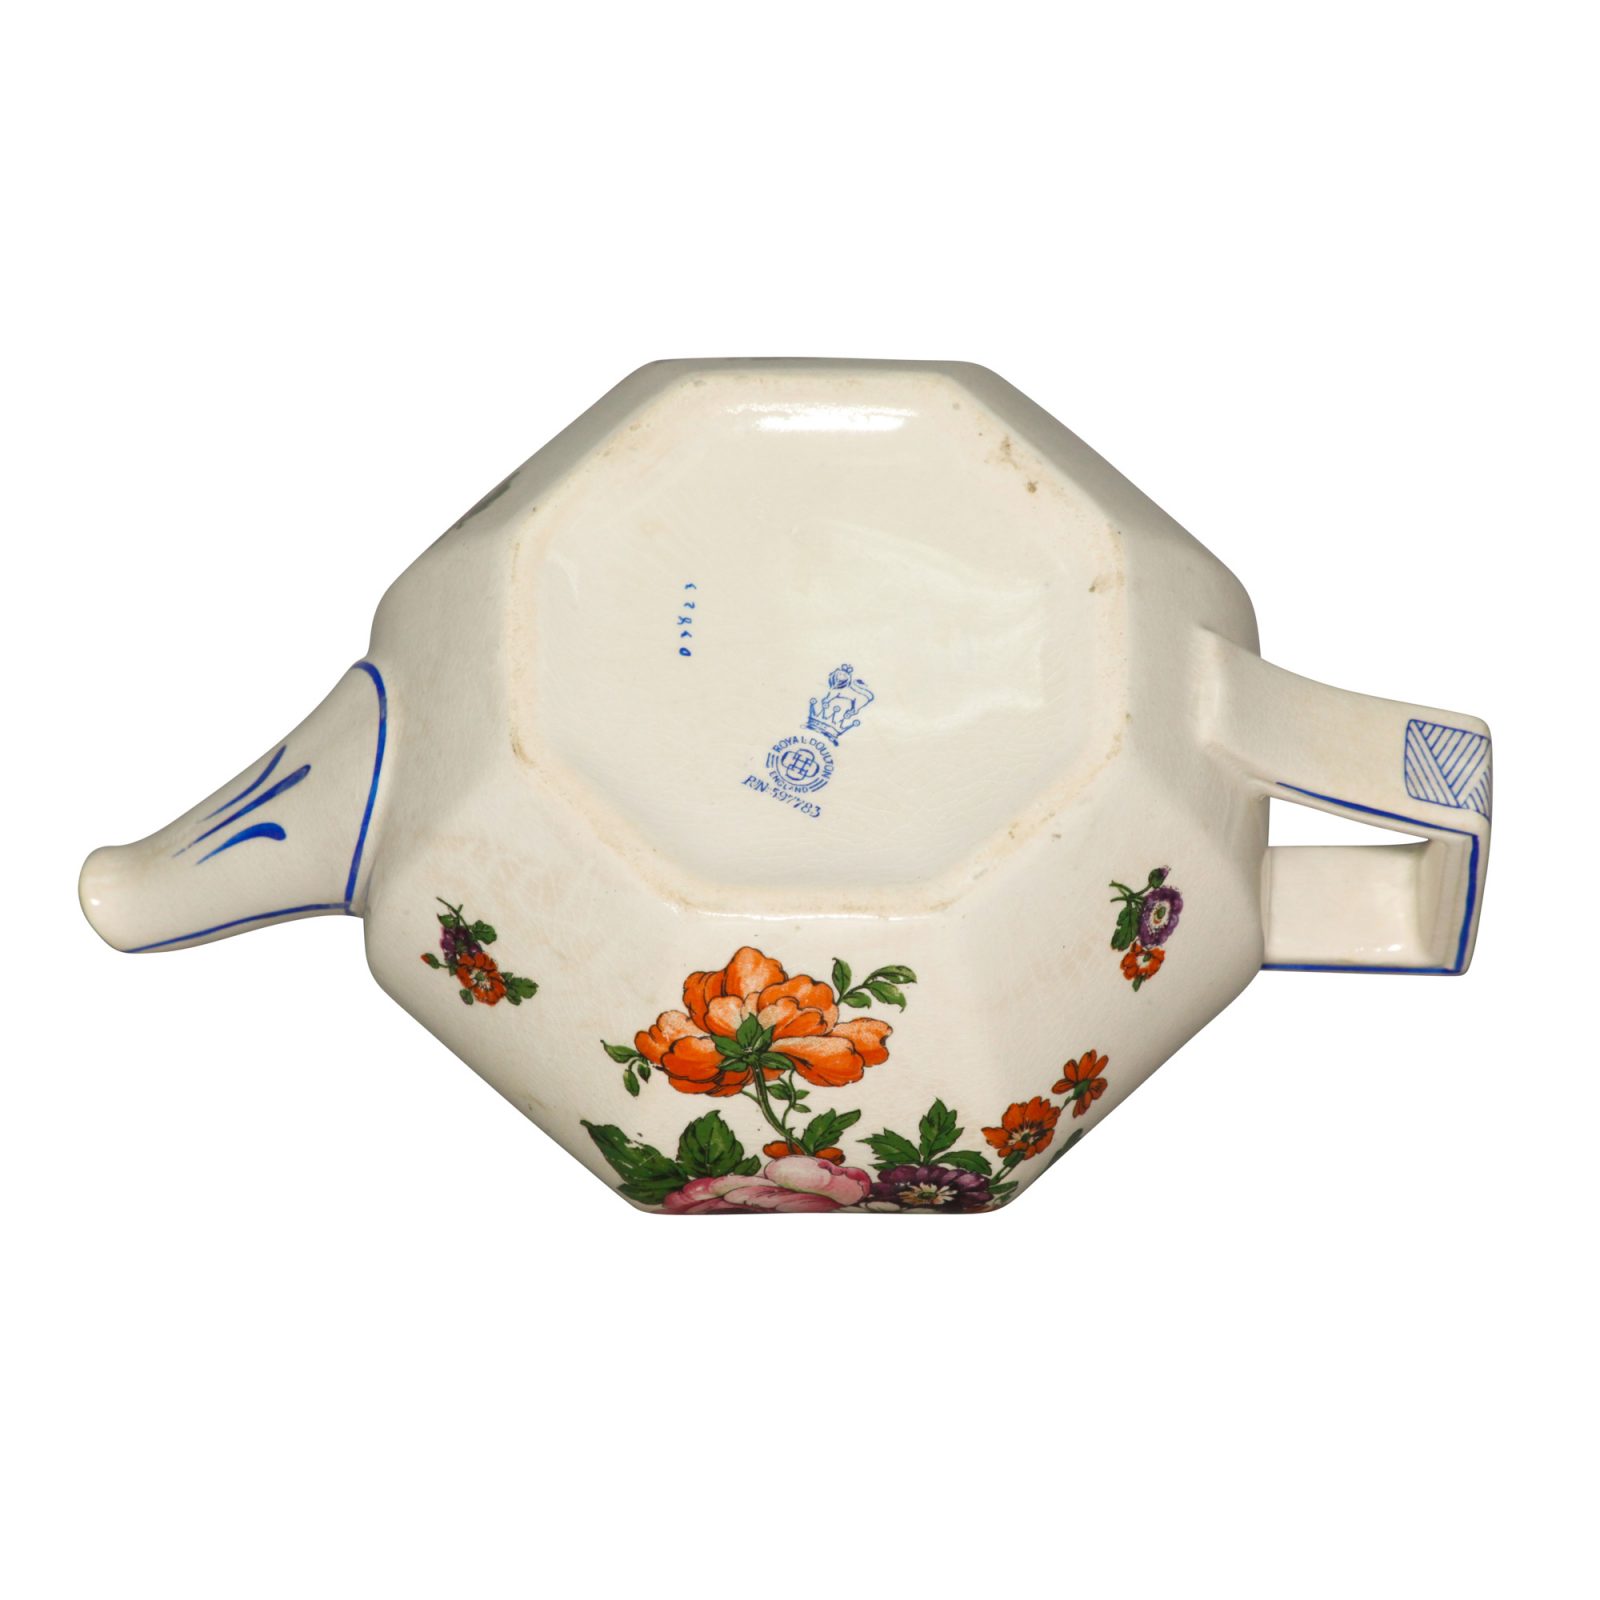 Teapot "Floral" - Royal Doulton Seriesware